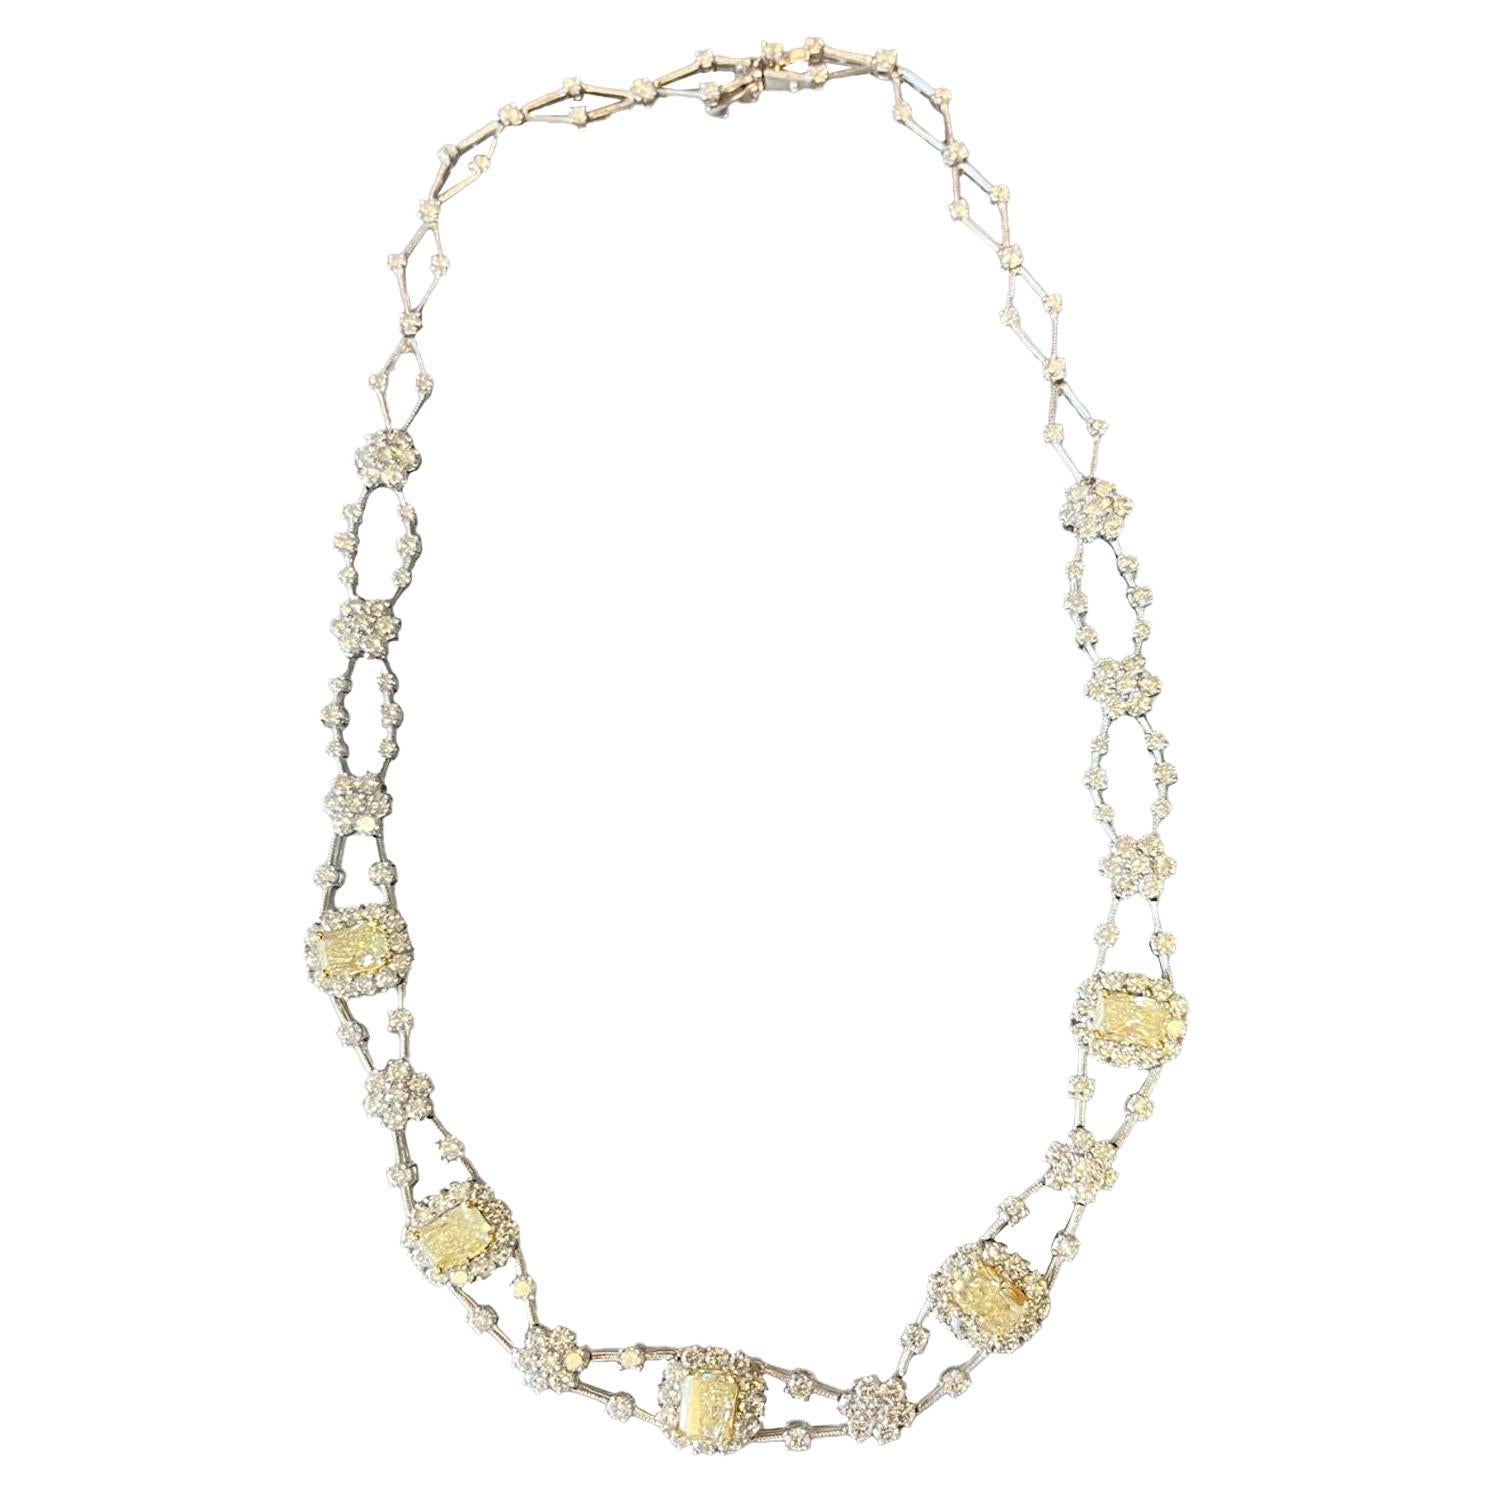 Halskette mit 11,8 Karat gelben Fancy-Diamanten im natürlichen Strahlenschliff, 5,80 Karat